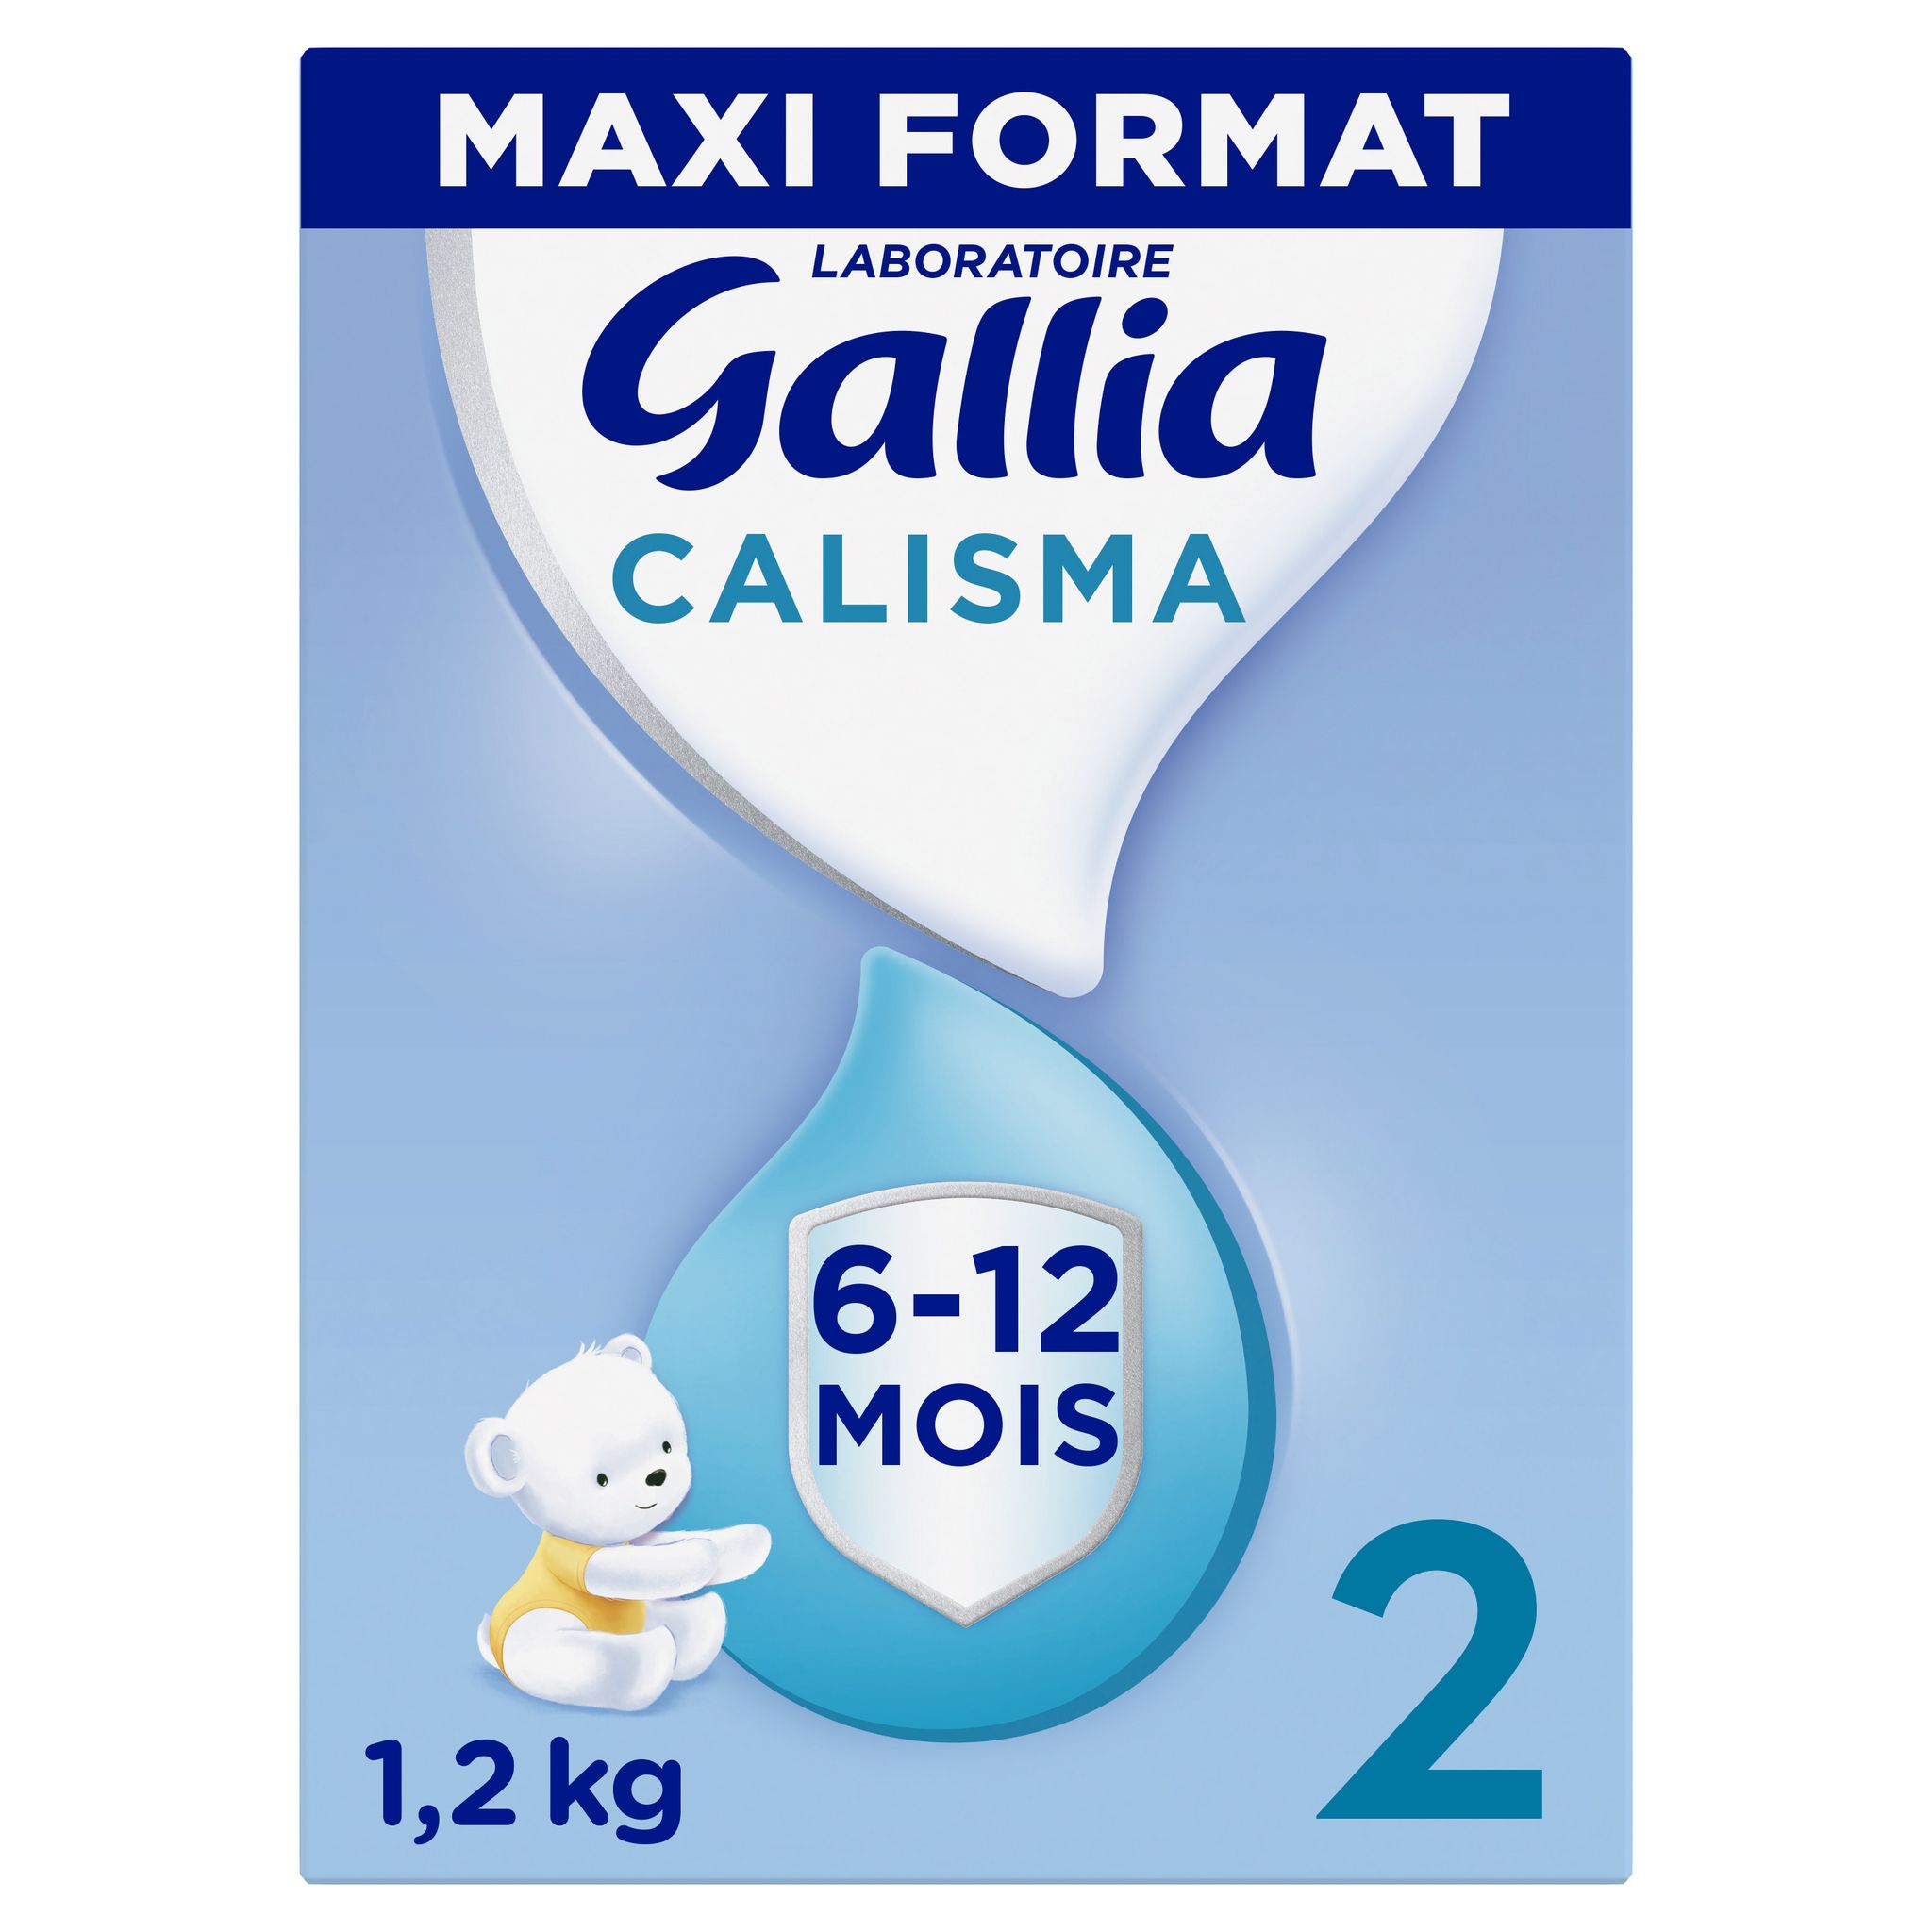 Calisma 2 lait 6/12 mois 800g